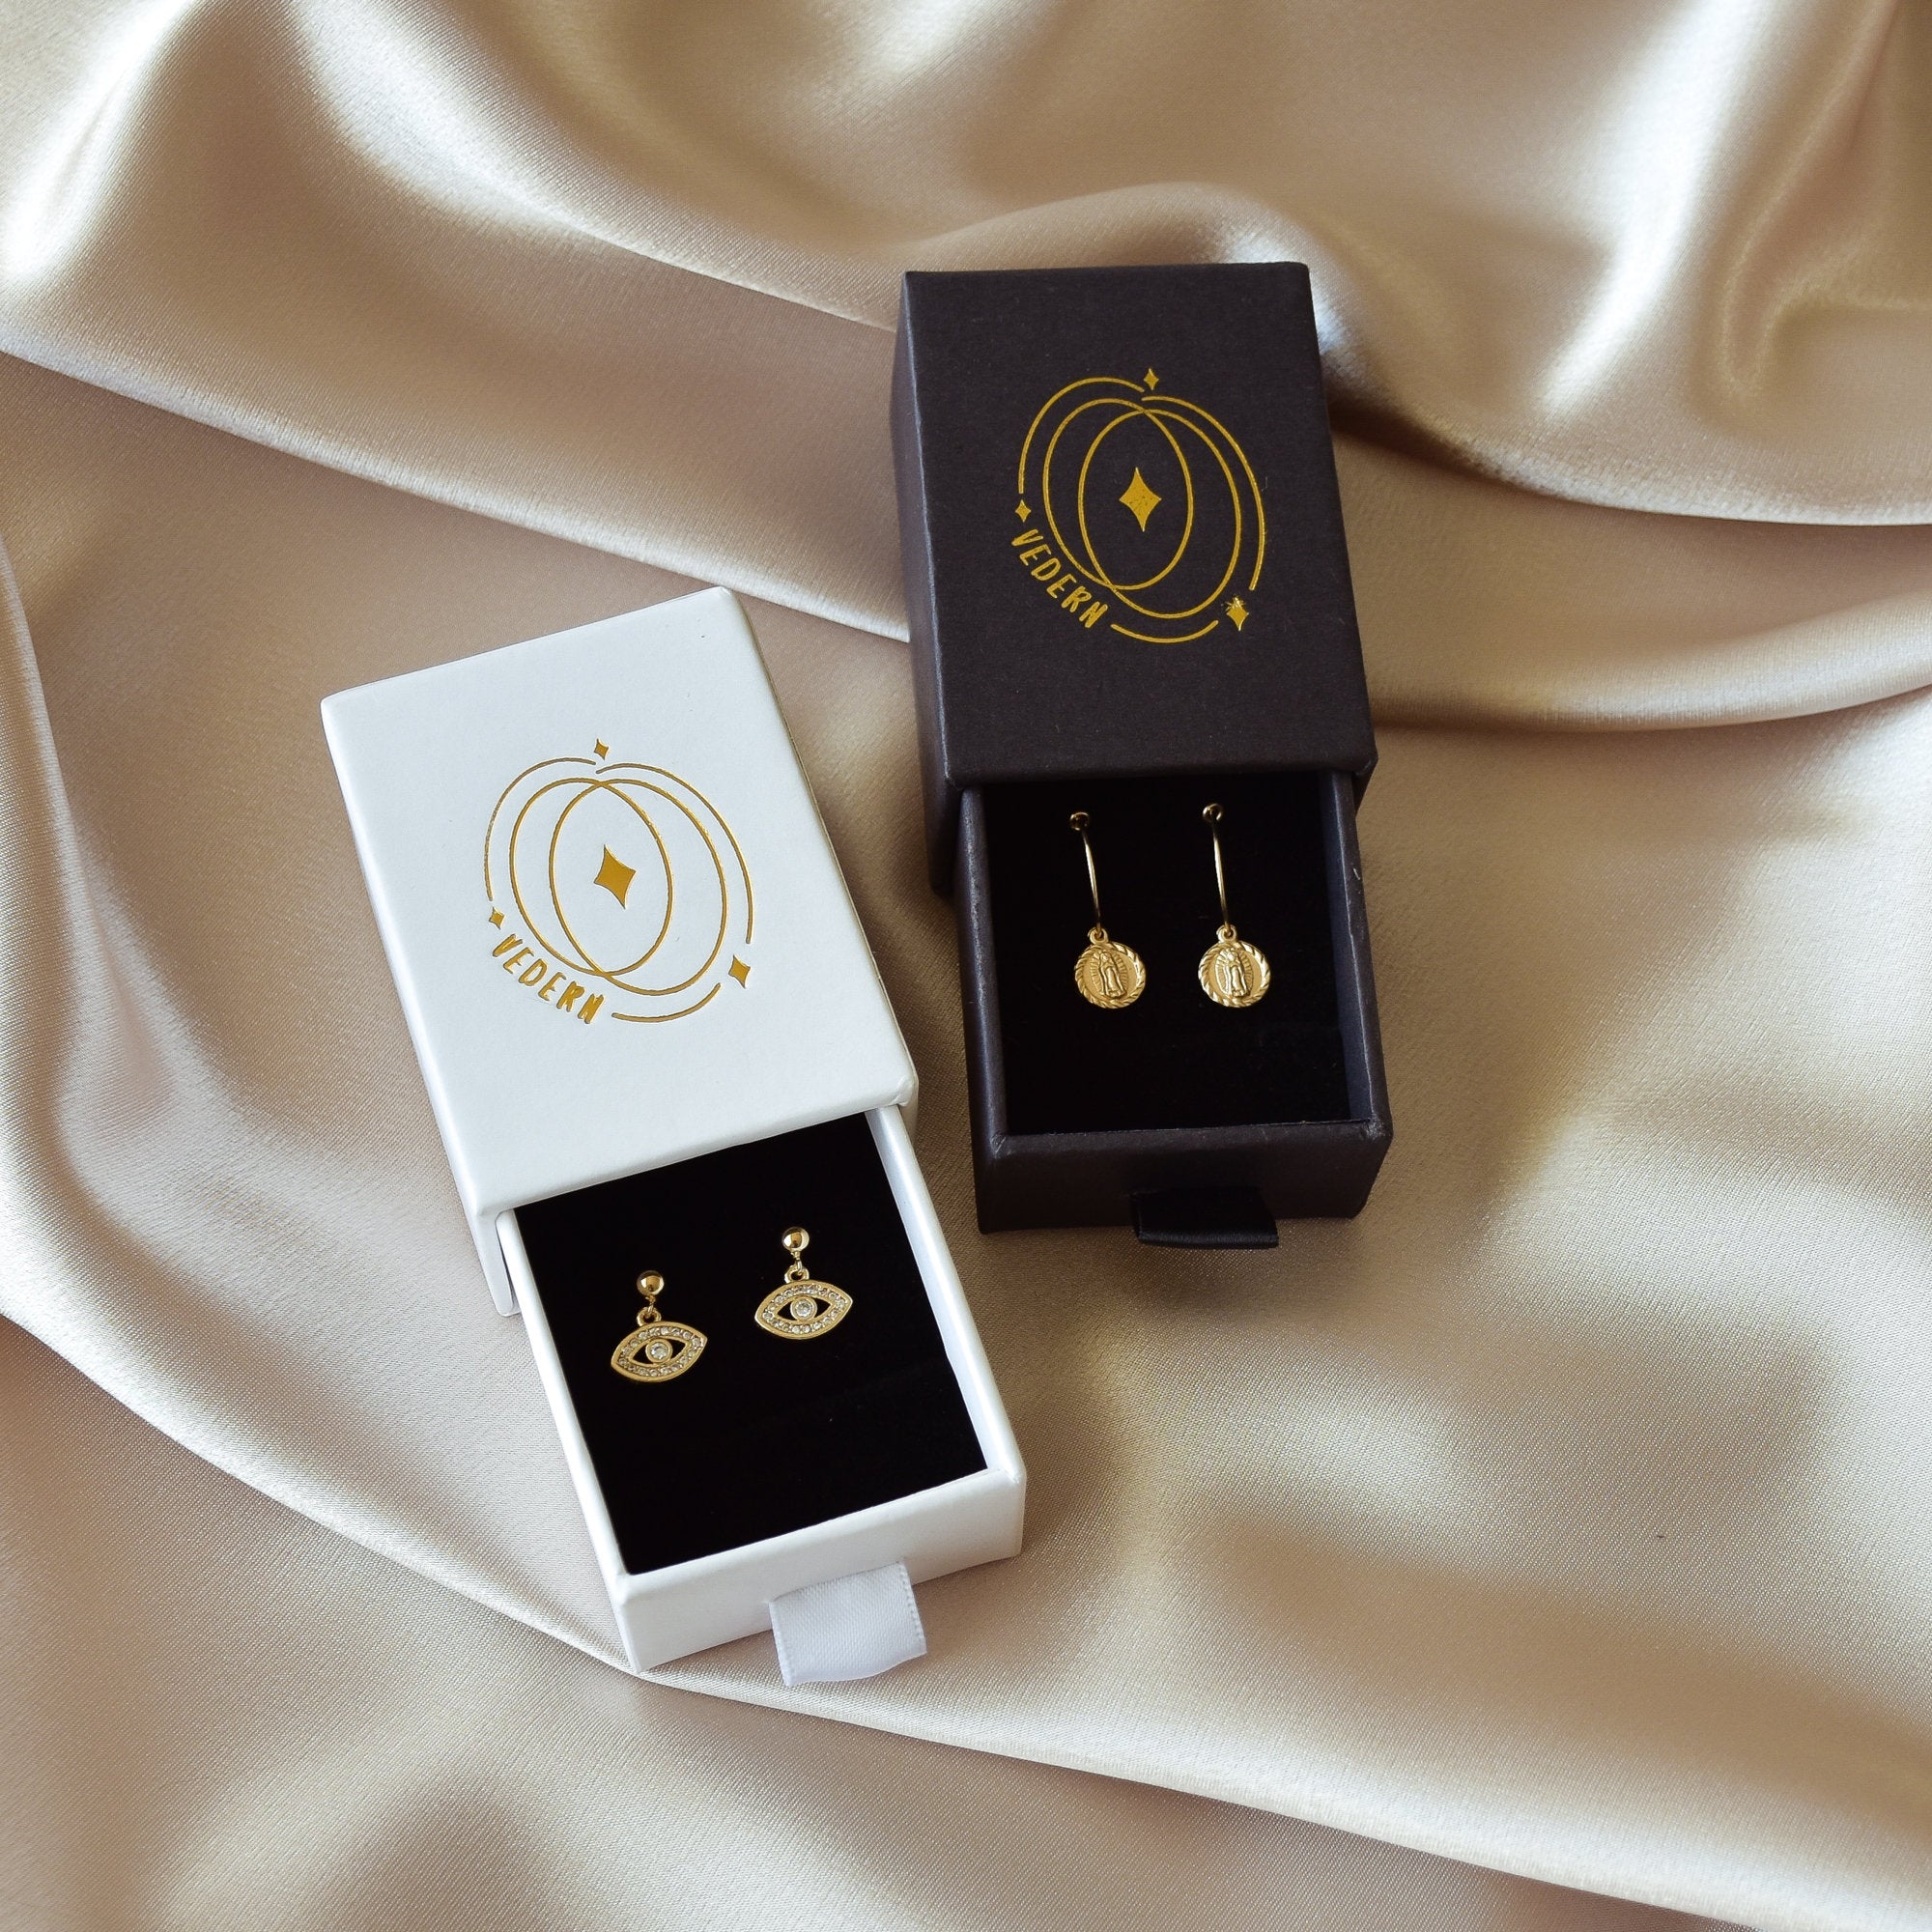 Chain Earrings - gold chain earrings, simple gold earrings, simple earrings, dainty gold earrings, surgical steel earrings |GPE00011